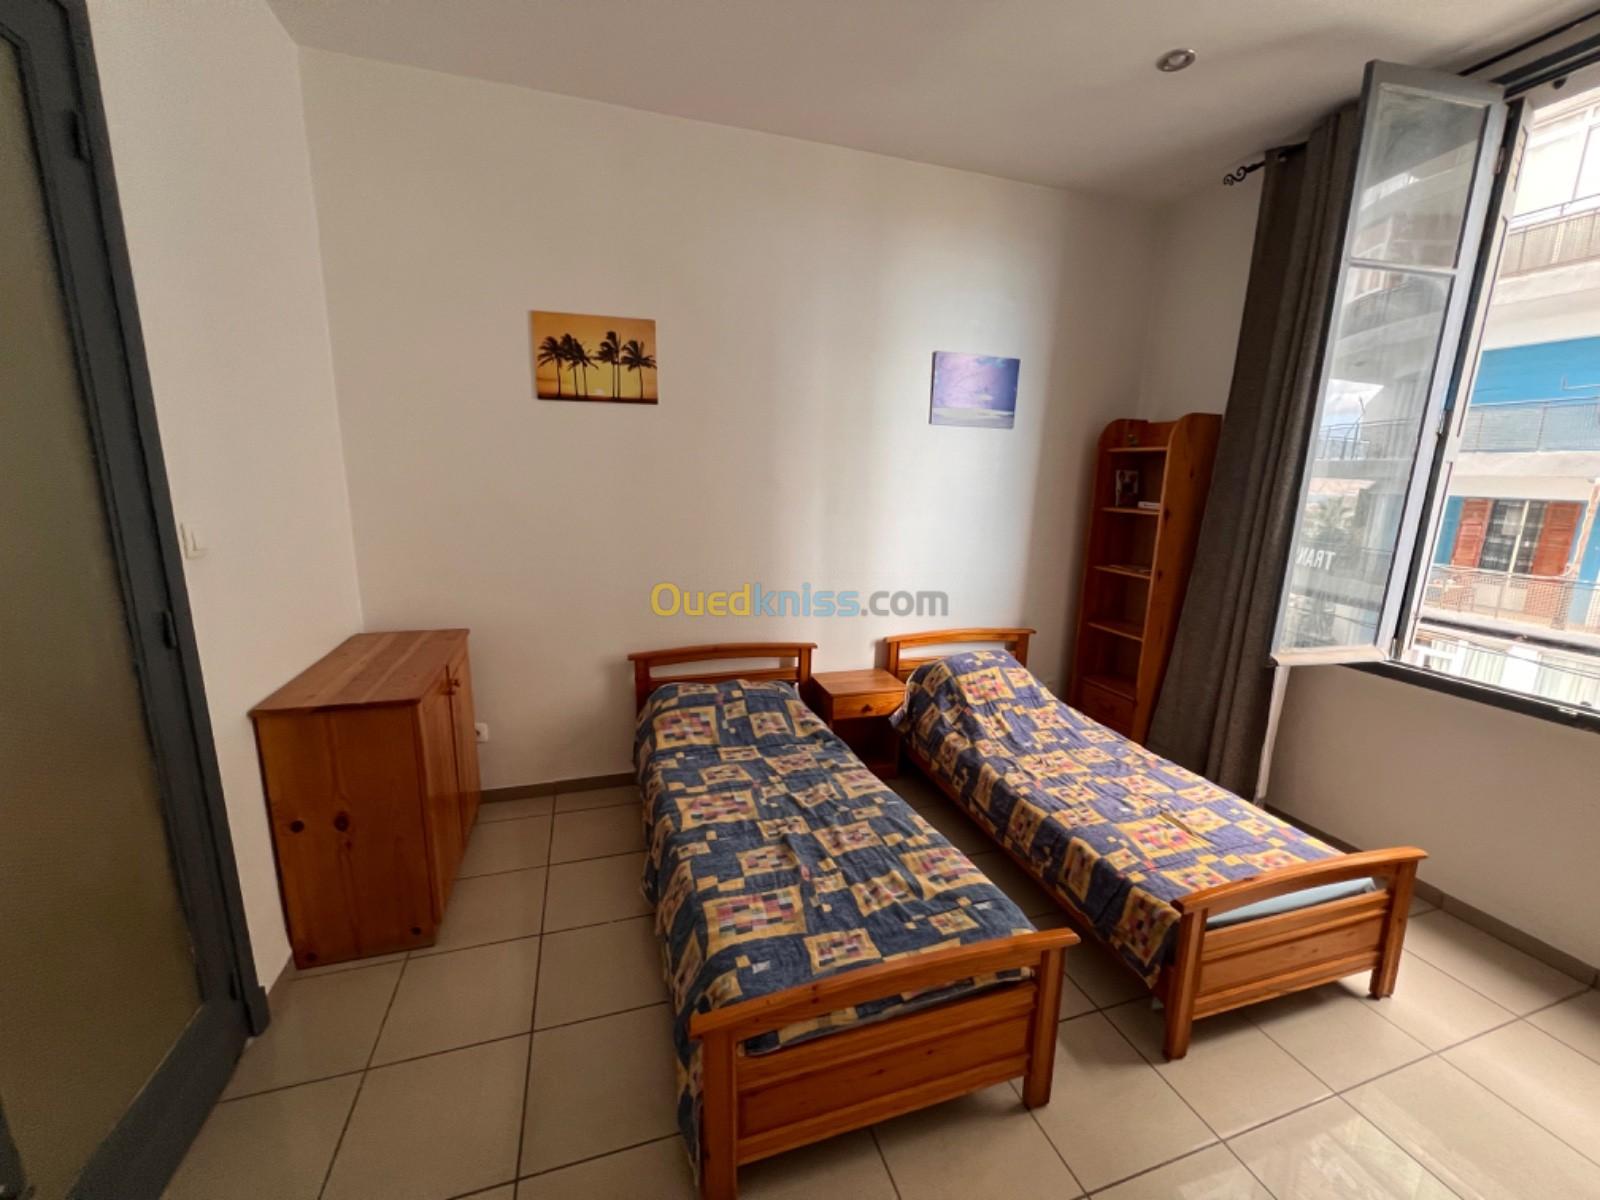 Location Appartement F03 Oran Oran